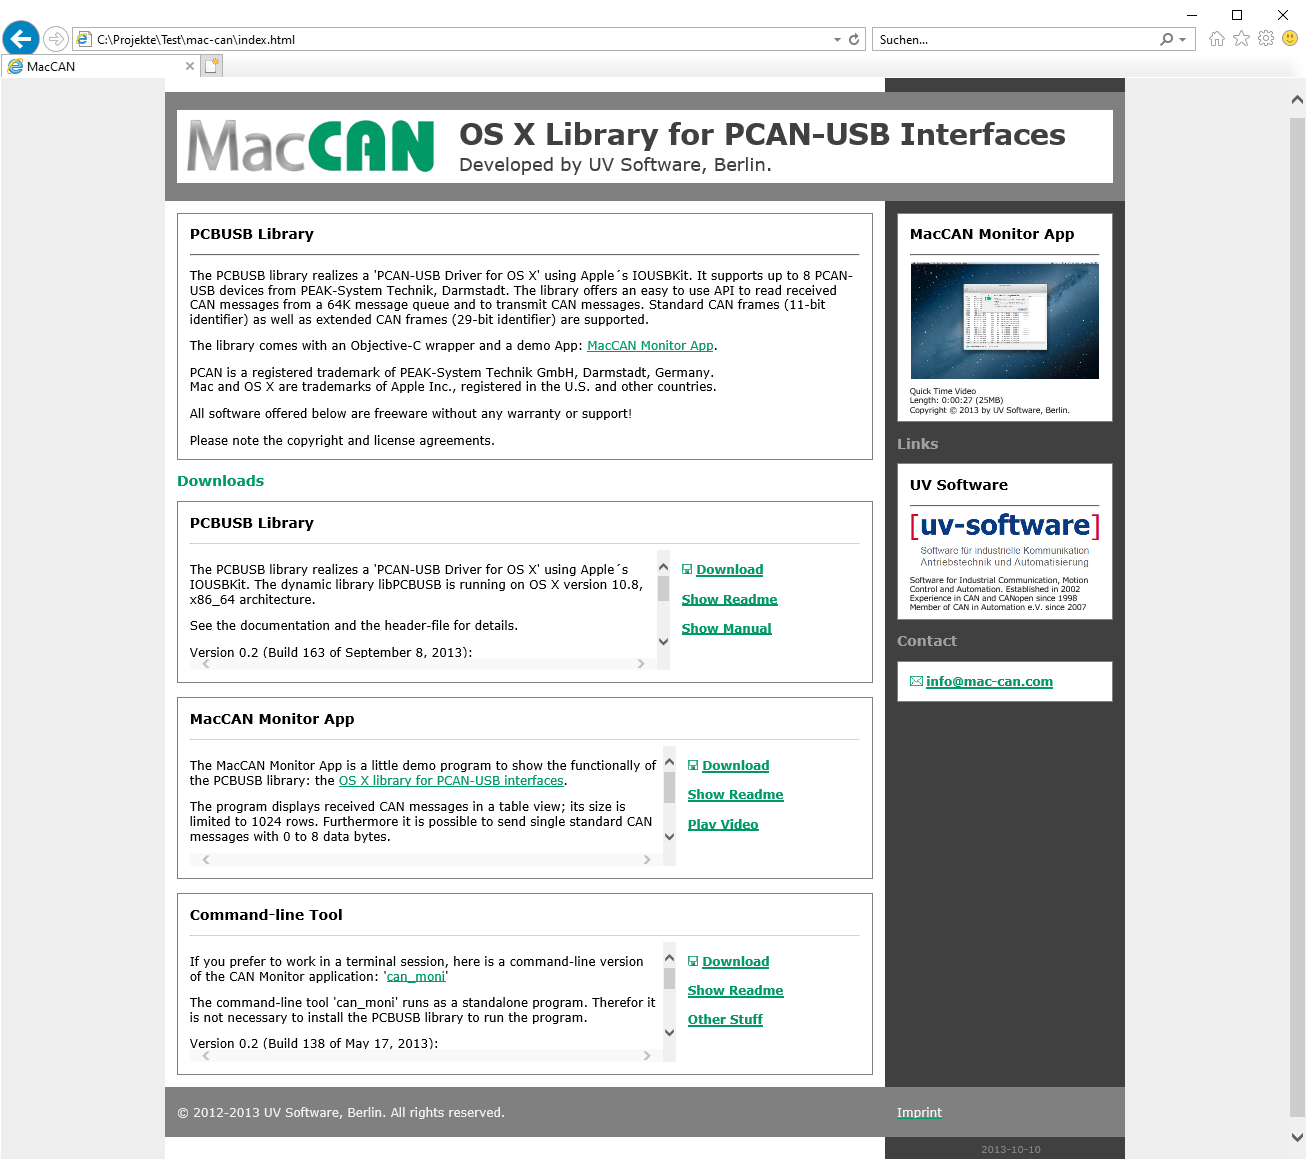 Website mac-can.com as of October 10, 2013